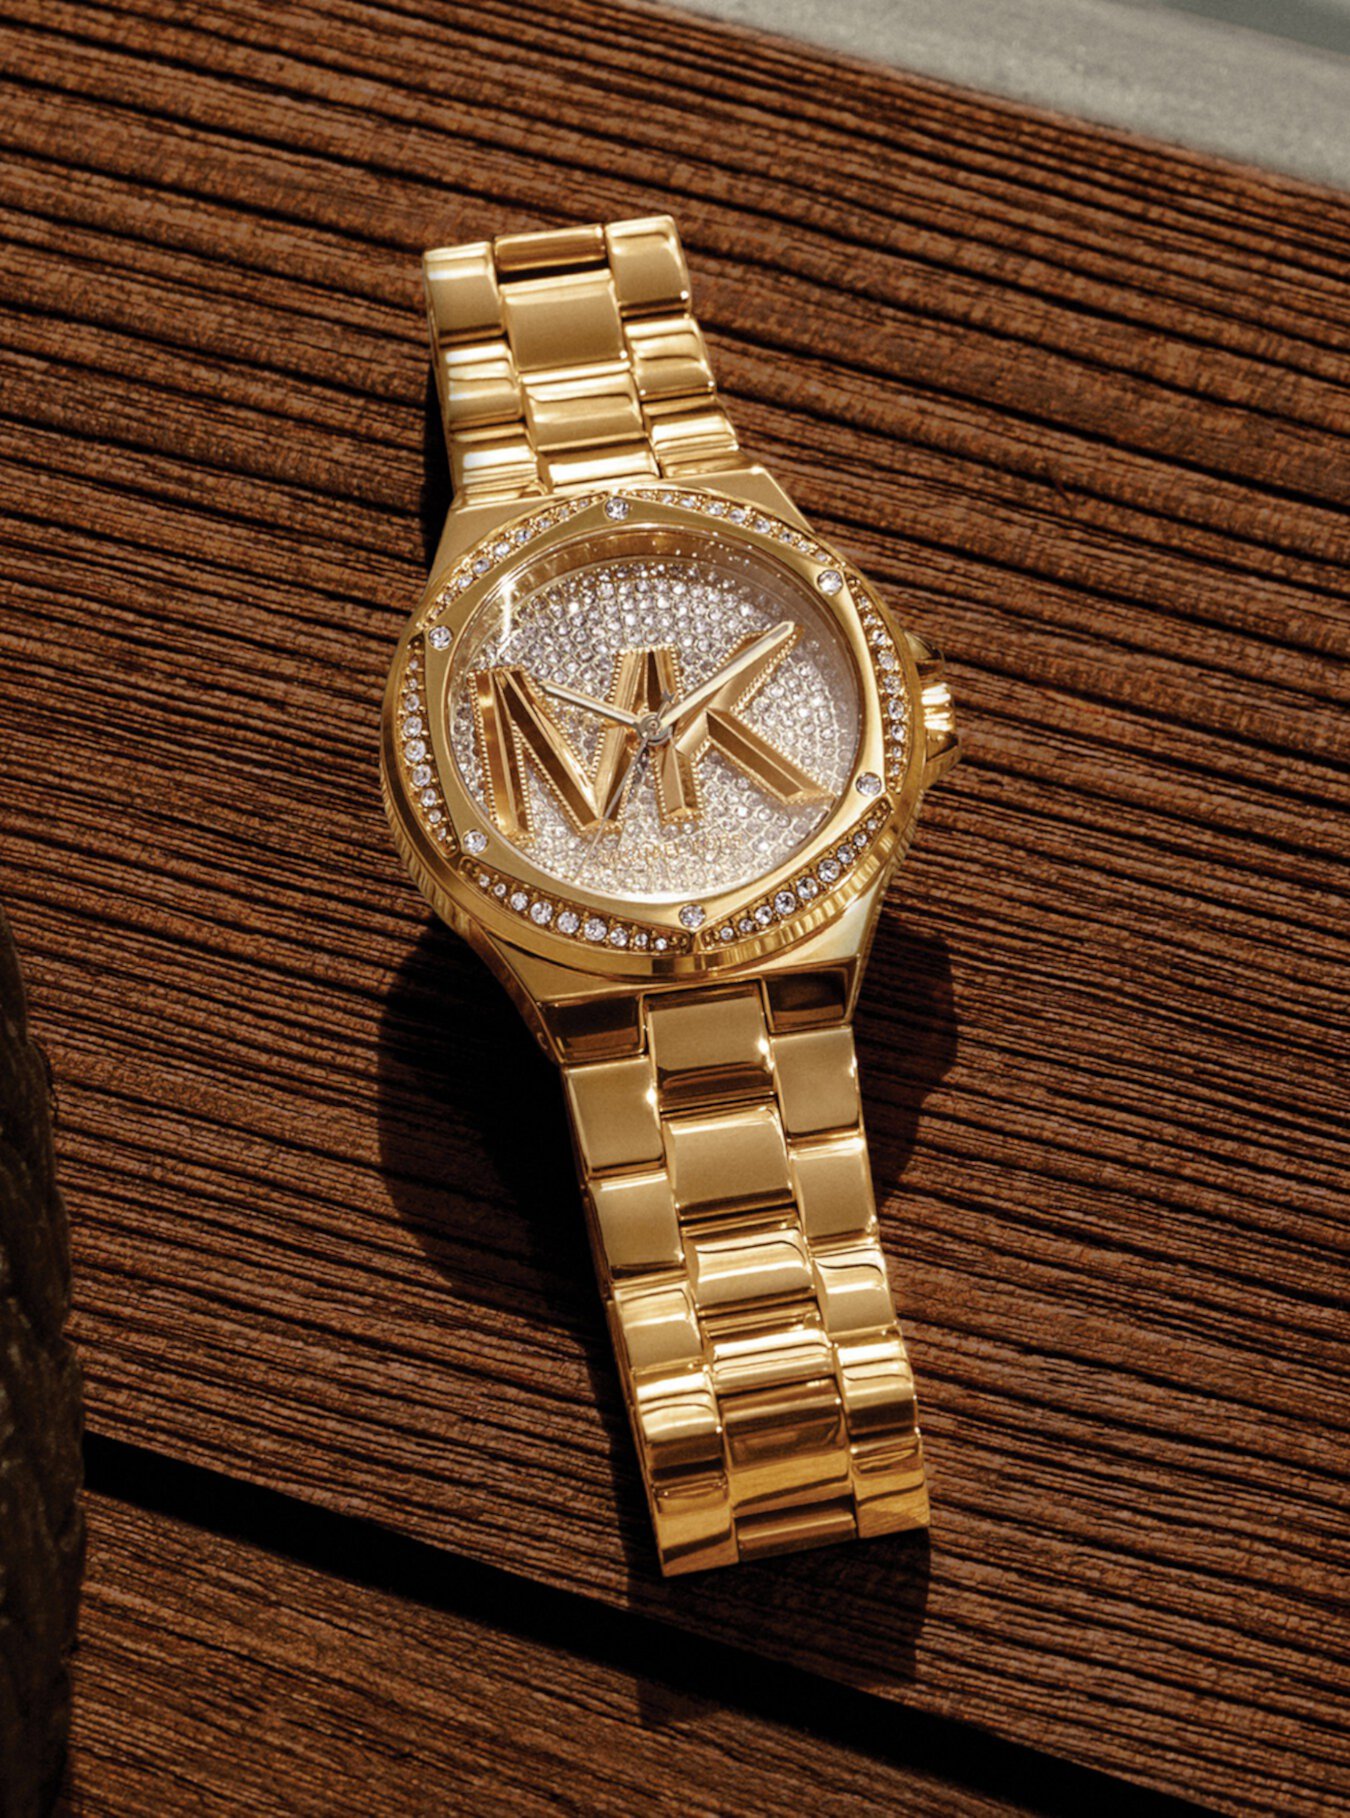 Золотистые часы Lennox Pavé с логотипом Michael Kors